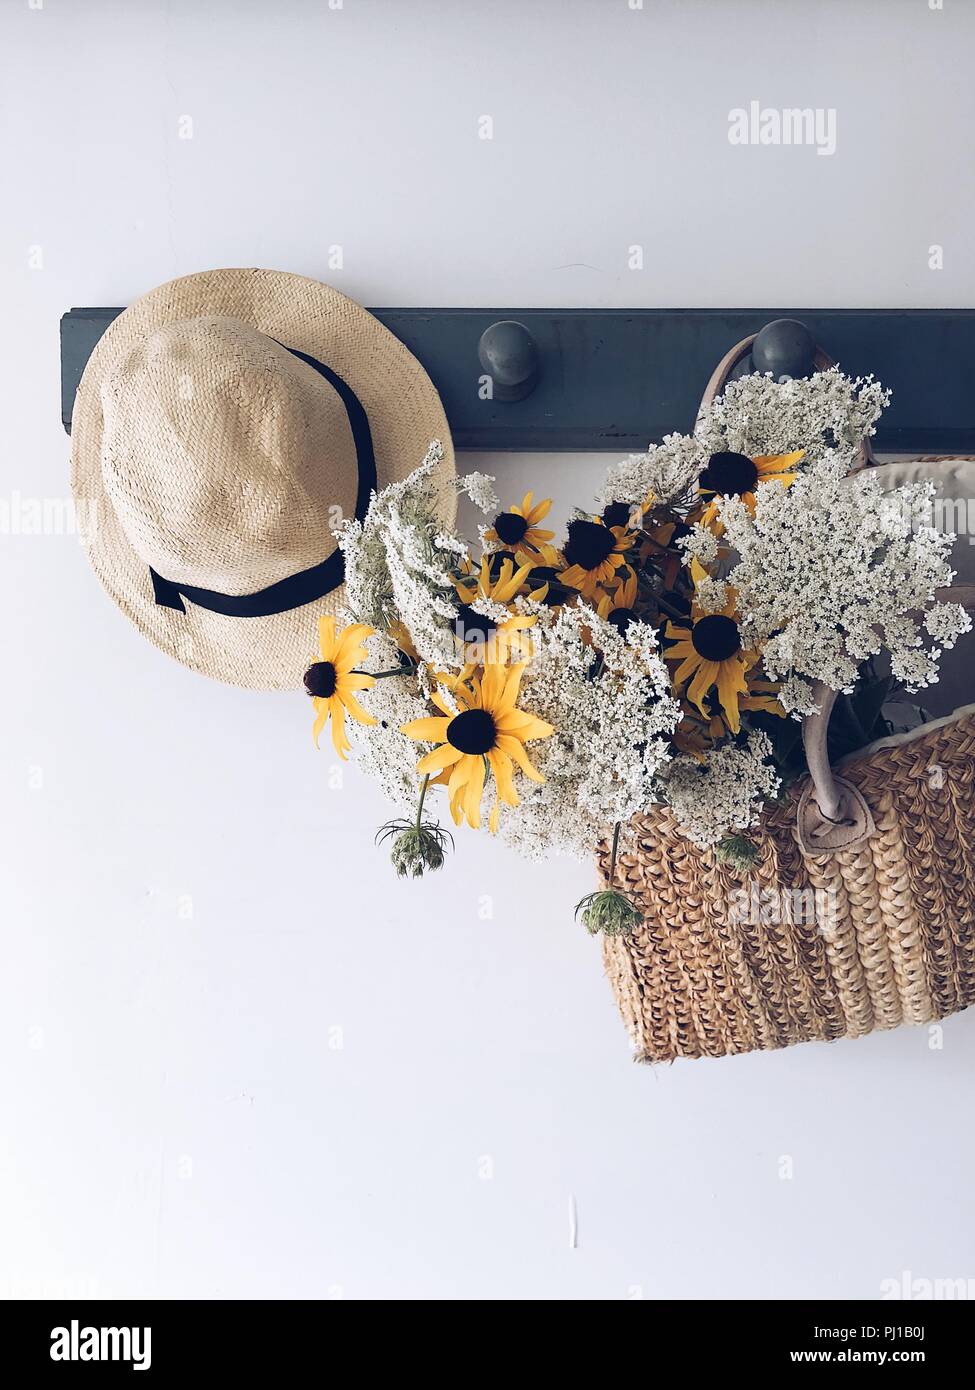 Die Zustellung der Blumen in einem Korb hängen an einer Garderobe mit einem Hut Stockfoto